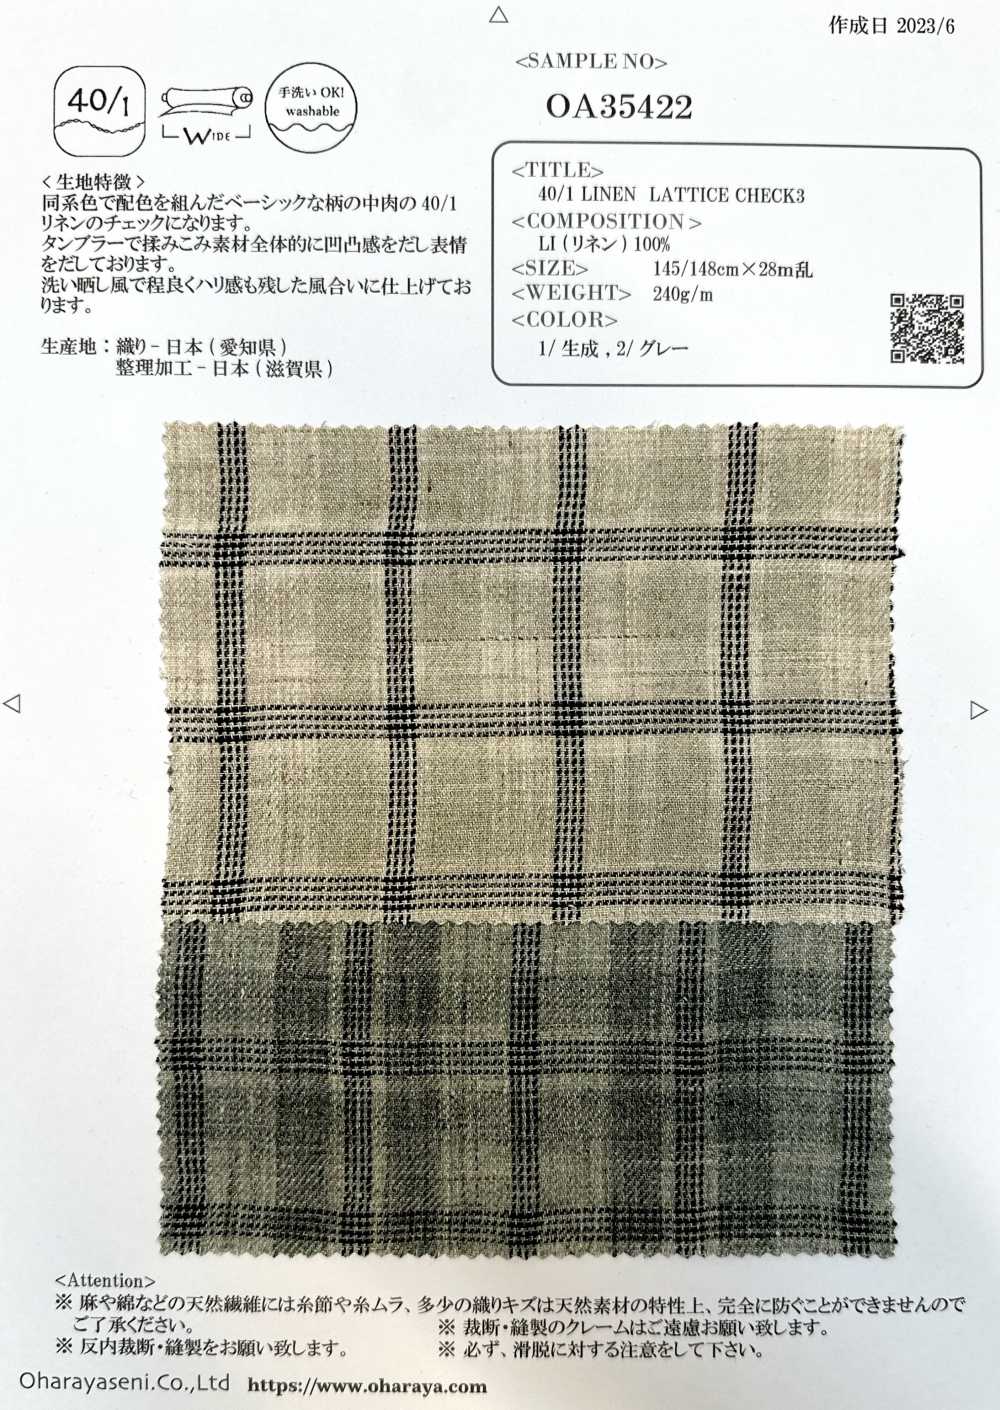 OA35422 CELOSÍA LINO 40/1 CUADRO3[Fabrica Textil] Oharayaseni